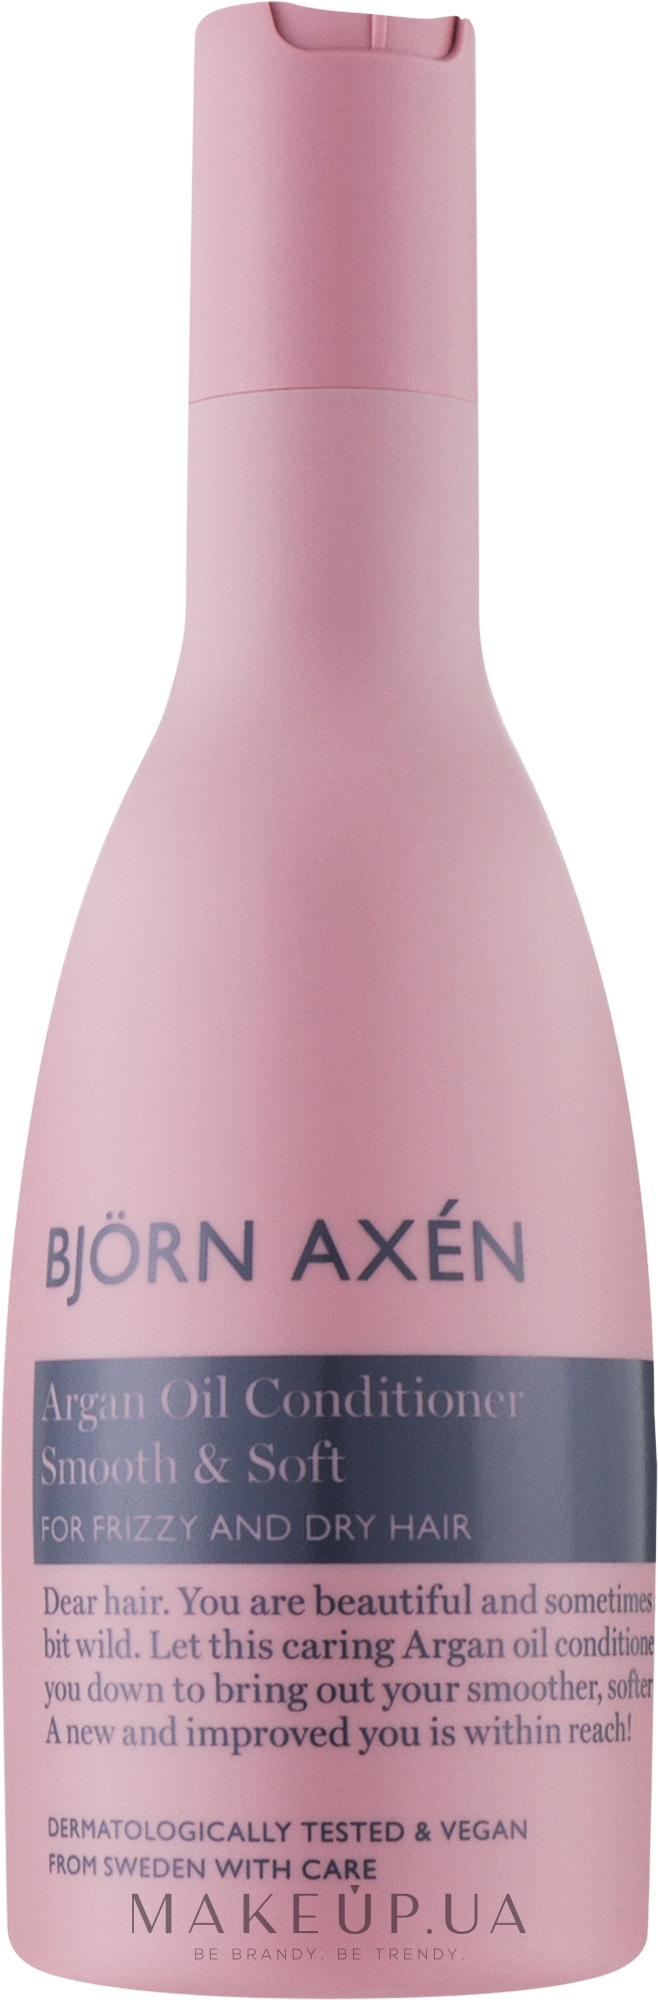 Кондиционер для волос с аргановым маслом - BjOrn AxEn Argan Oil Hair Conditioner  — фото 250ml